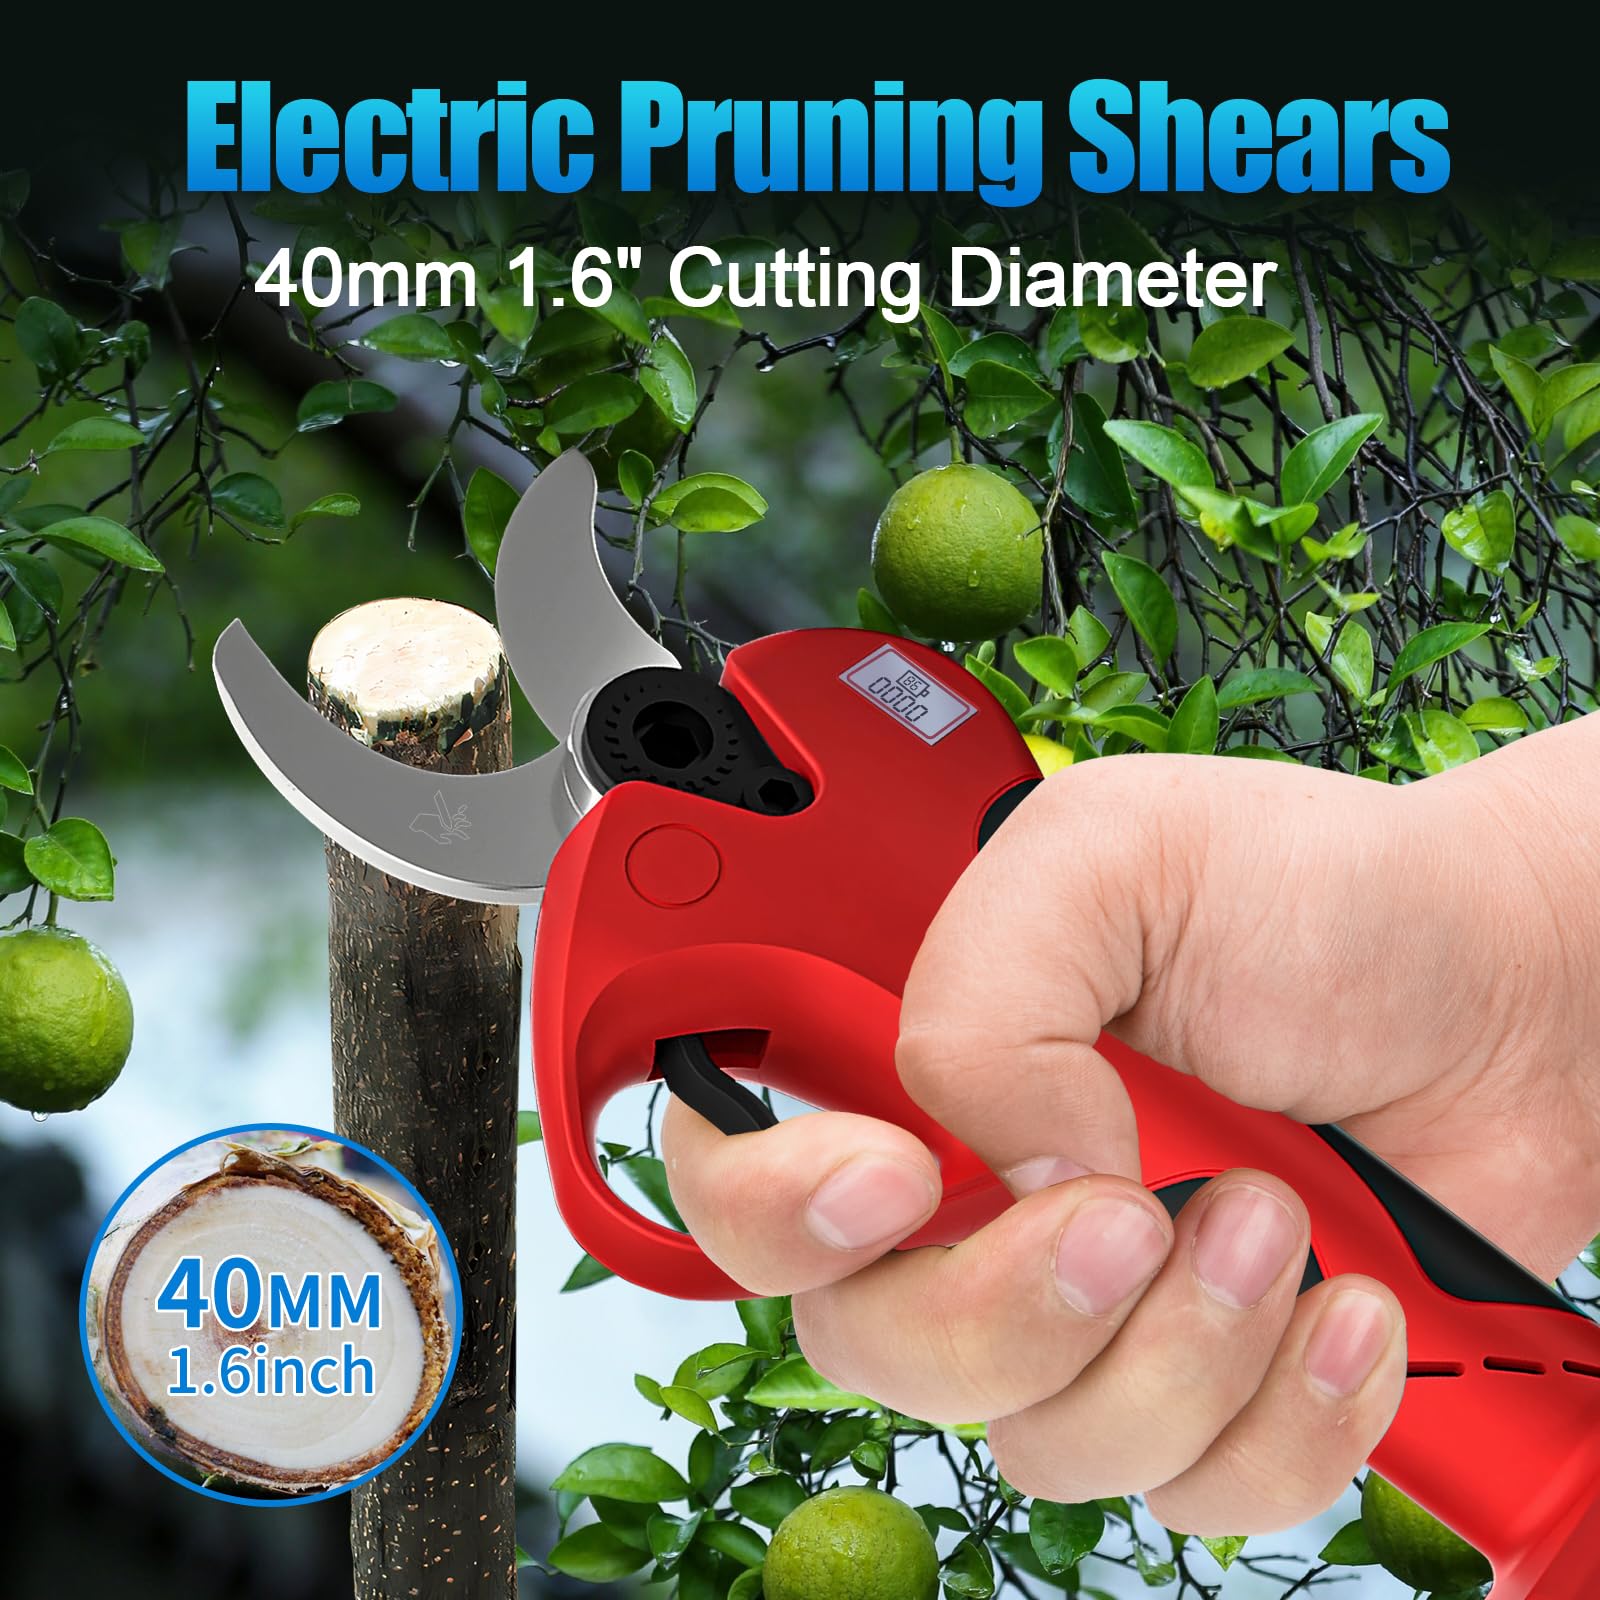 Electric Pruning Shears 40mm 1.6" Cutting Diameter